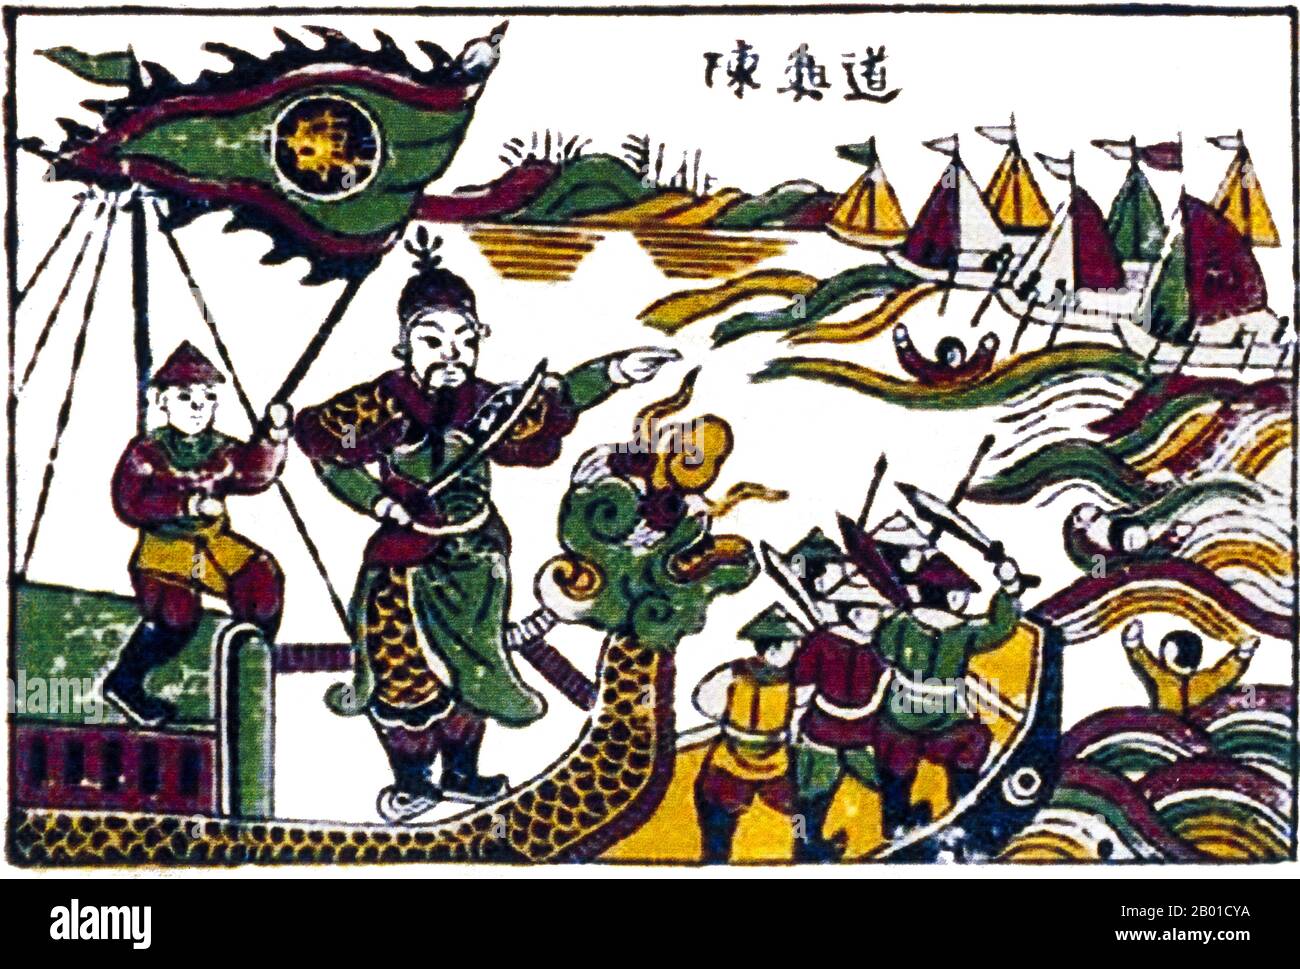 Vietnam: Tran Hung Dao, vincitore della seconda battaglia del fiume Bach Dang, comandante delle sue forze (1288 d.C.). Tradizionale pittura popolare dal villaggio di Dong ho, 20th ° secolo. La Battaglia di Bạch Đằng, che ebbe luogo sul fiume Bach Dang vicino alla Baia di ha Long, fu una battaglia tra Đại Việt e l'esercito invasore della dinastia Yuan. È considerata parte della terza invasione mongola (1287-1288). La battaglia di Bạch Đằng è considerata una delle più grandi vittorie nella storia militare vietnamita e il generale vittorioso Trần Hưng Đạo gode di uno status postumo come eroe guerriero deificato. Foto Stock